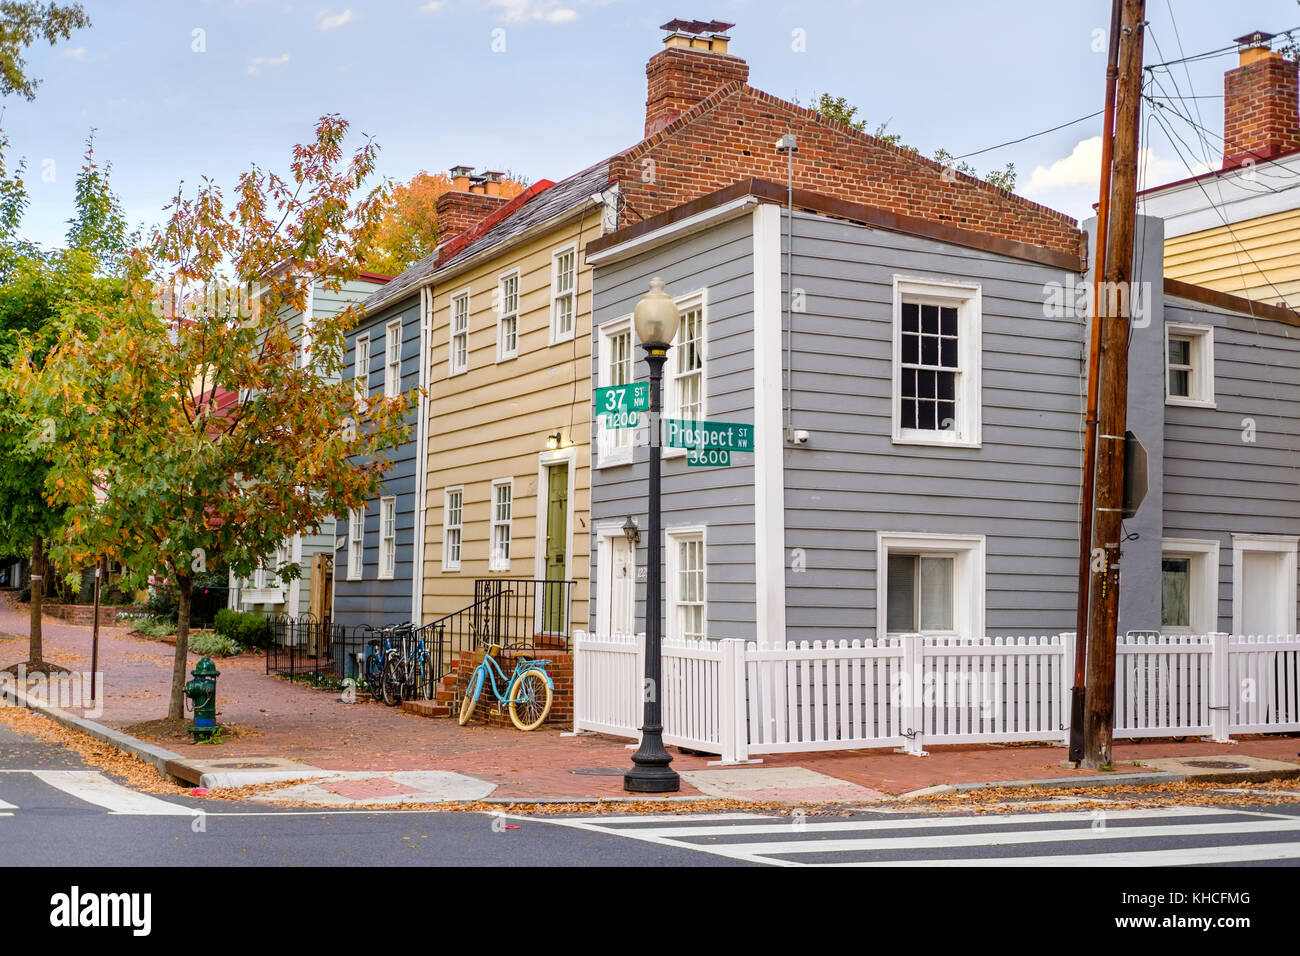 Vista sulla strada delle case in stile Cape Cod all'angolo tra Prospect St NW e 37 St NW nel quartiere storico di Georgetown, Washington D.C., USA. Foto Stock